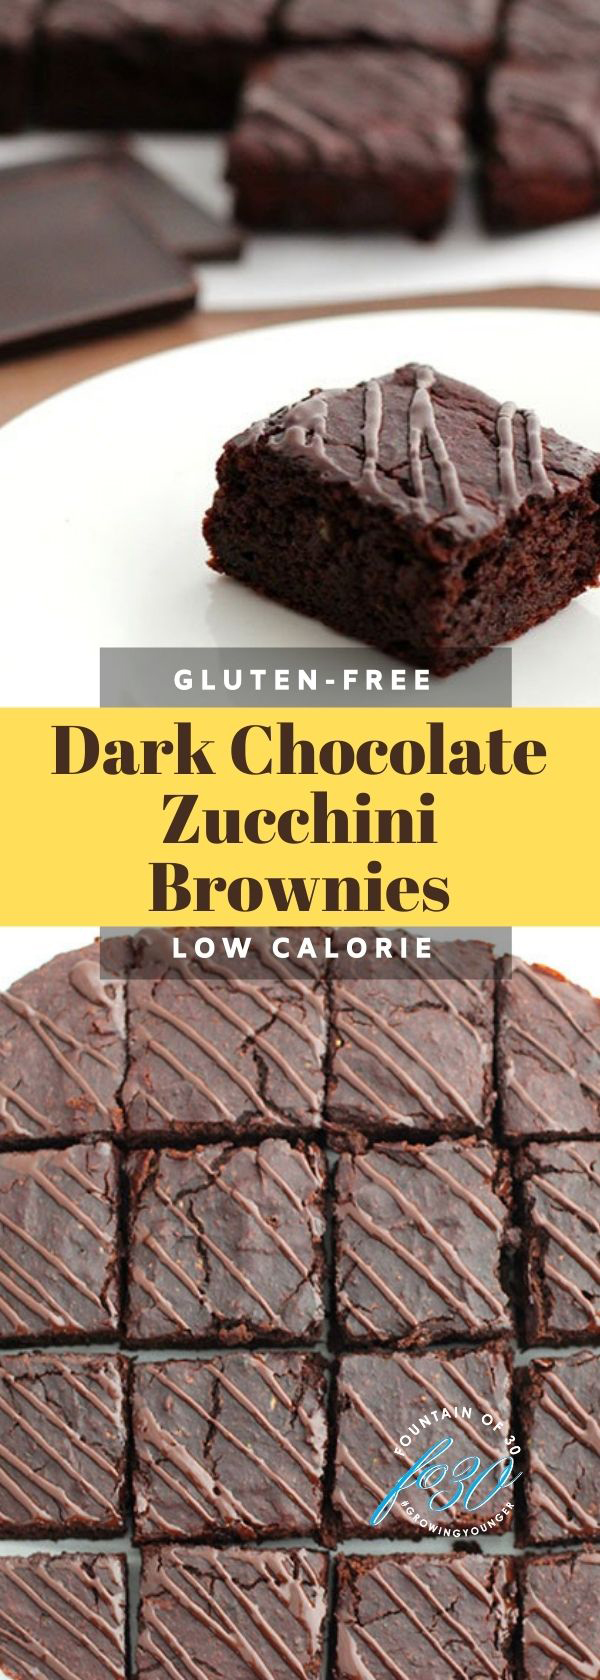 Dark Chocolate Zucchini Brownies FountainOf30